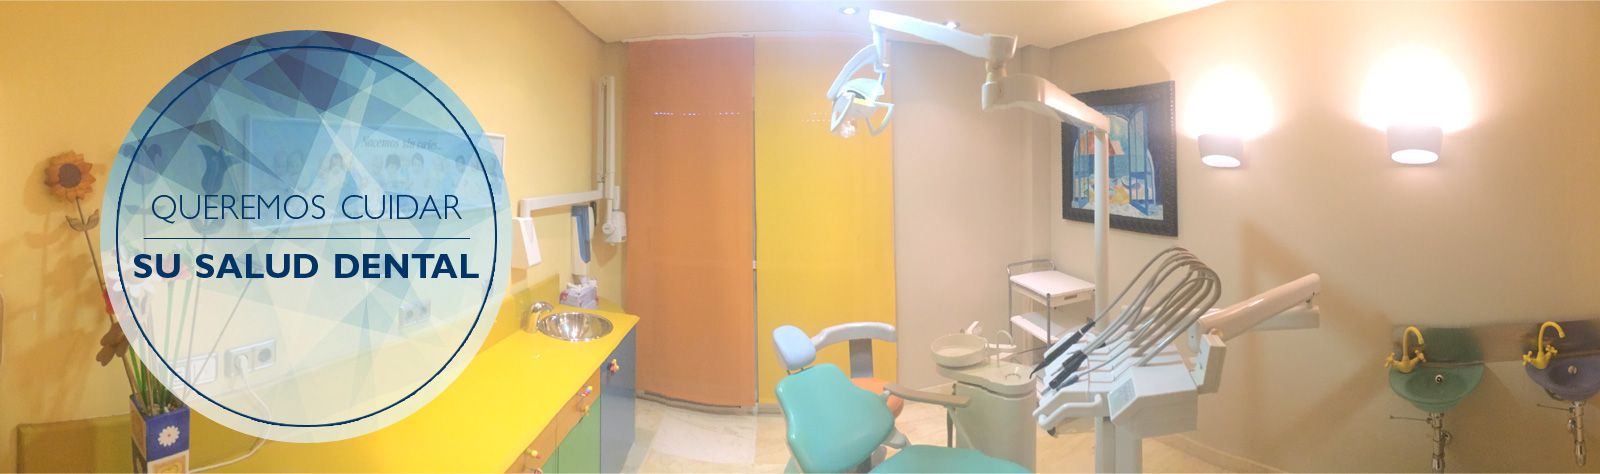 Clínica Dental Dr. López Nieto clínica